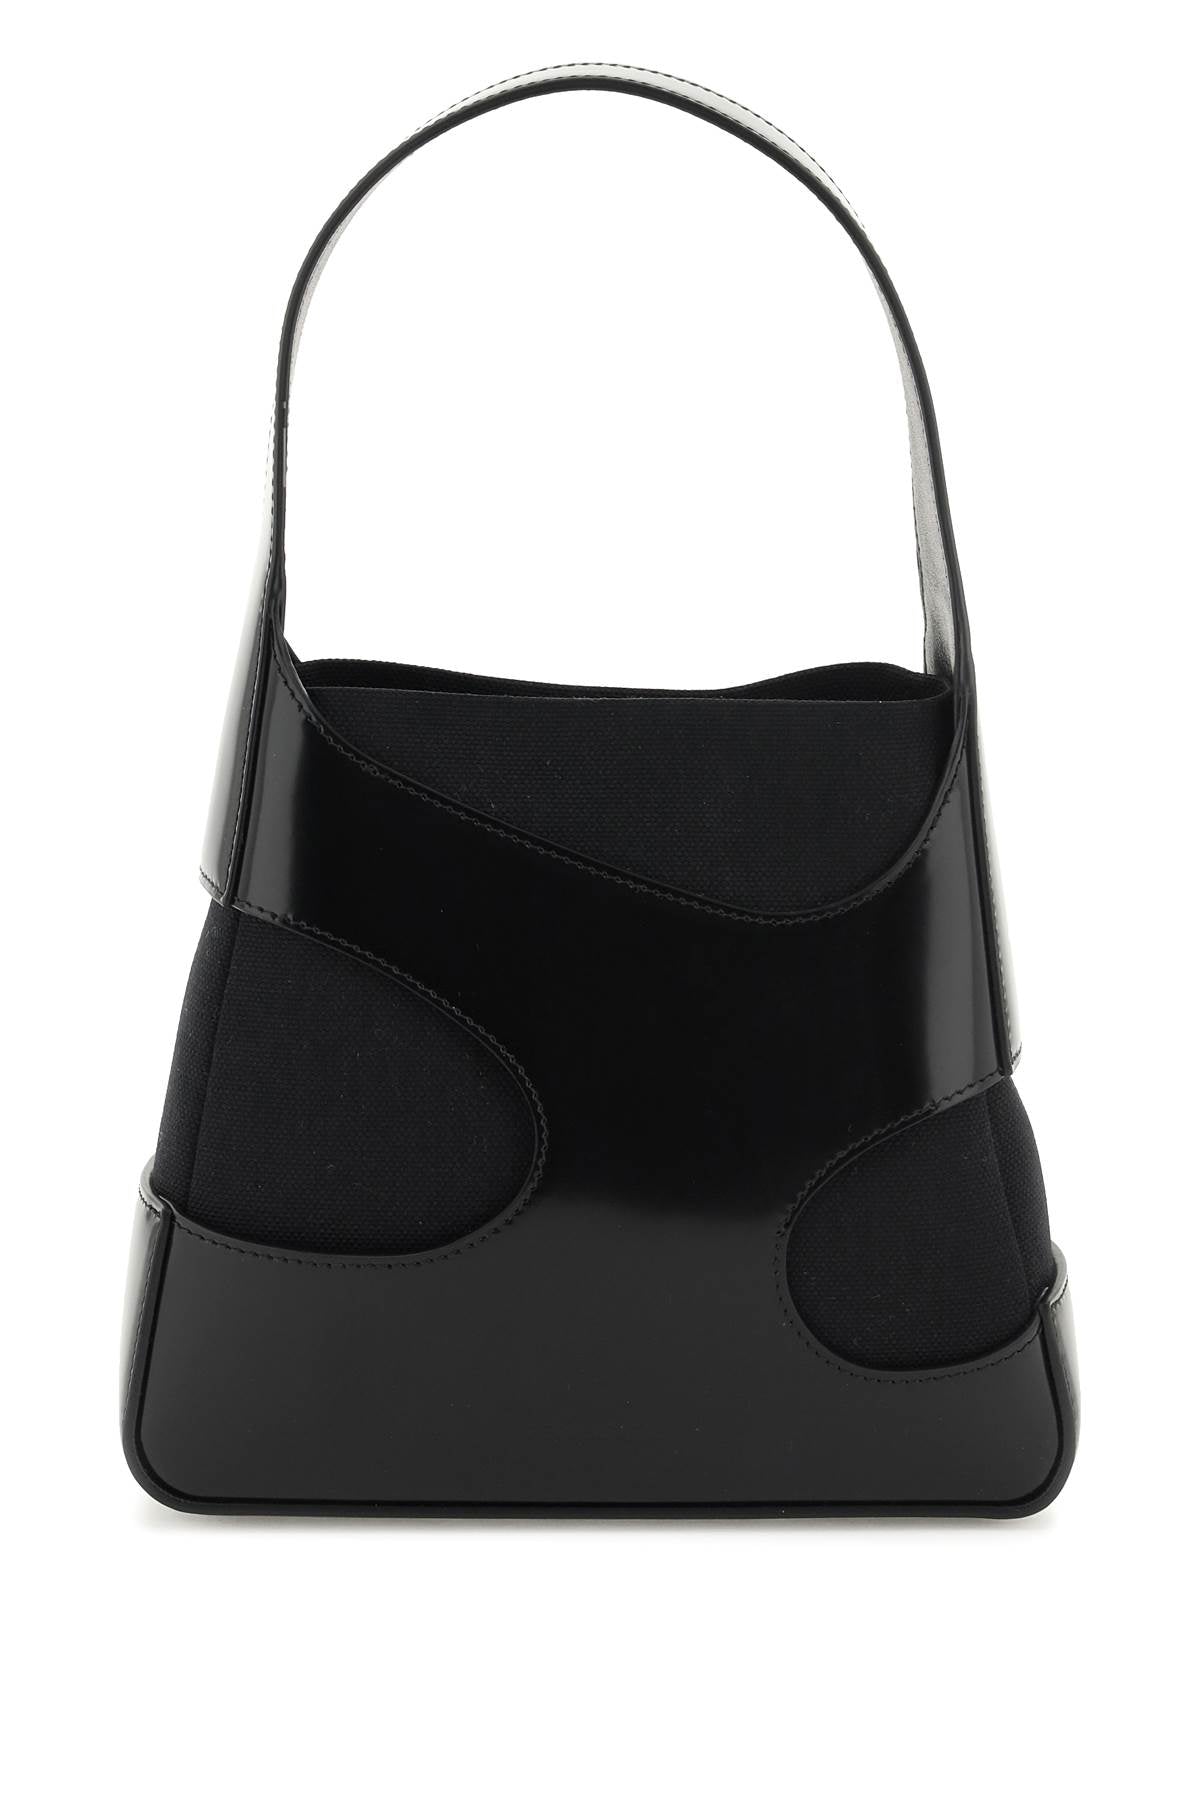 حقيبة يد سوداء من جلد طبيعي بتفاصيل مميزة للنساء